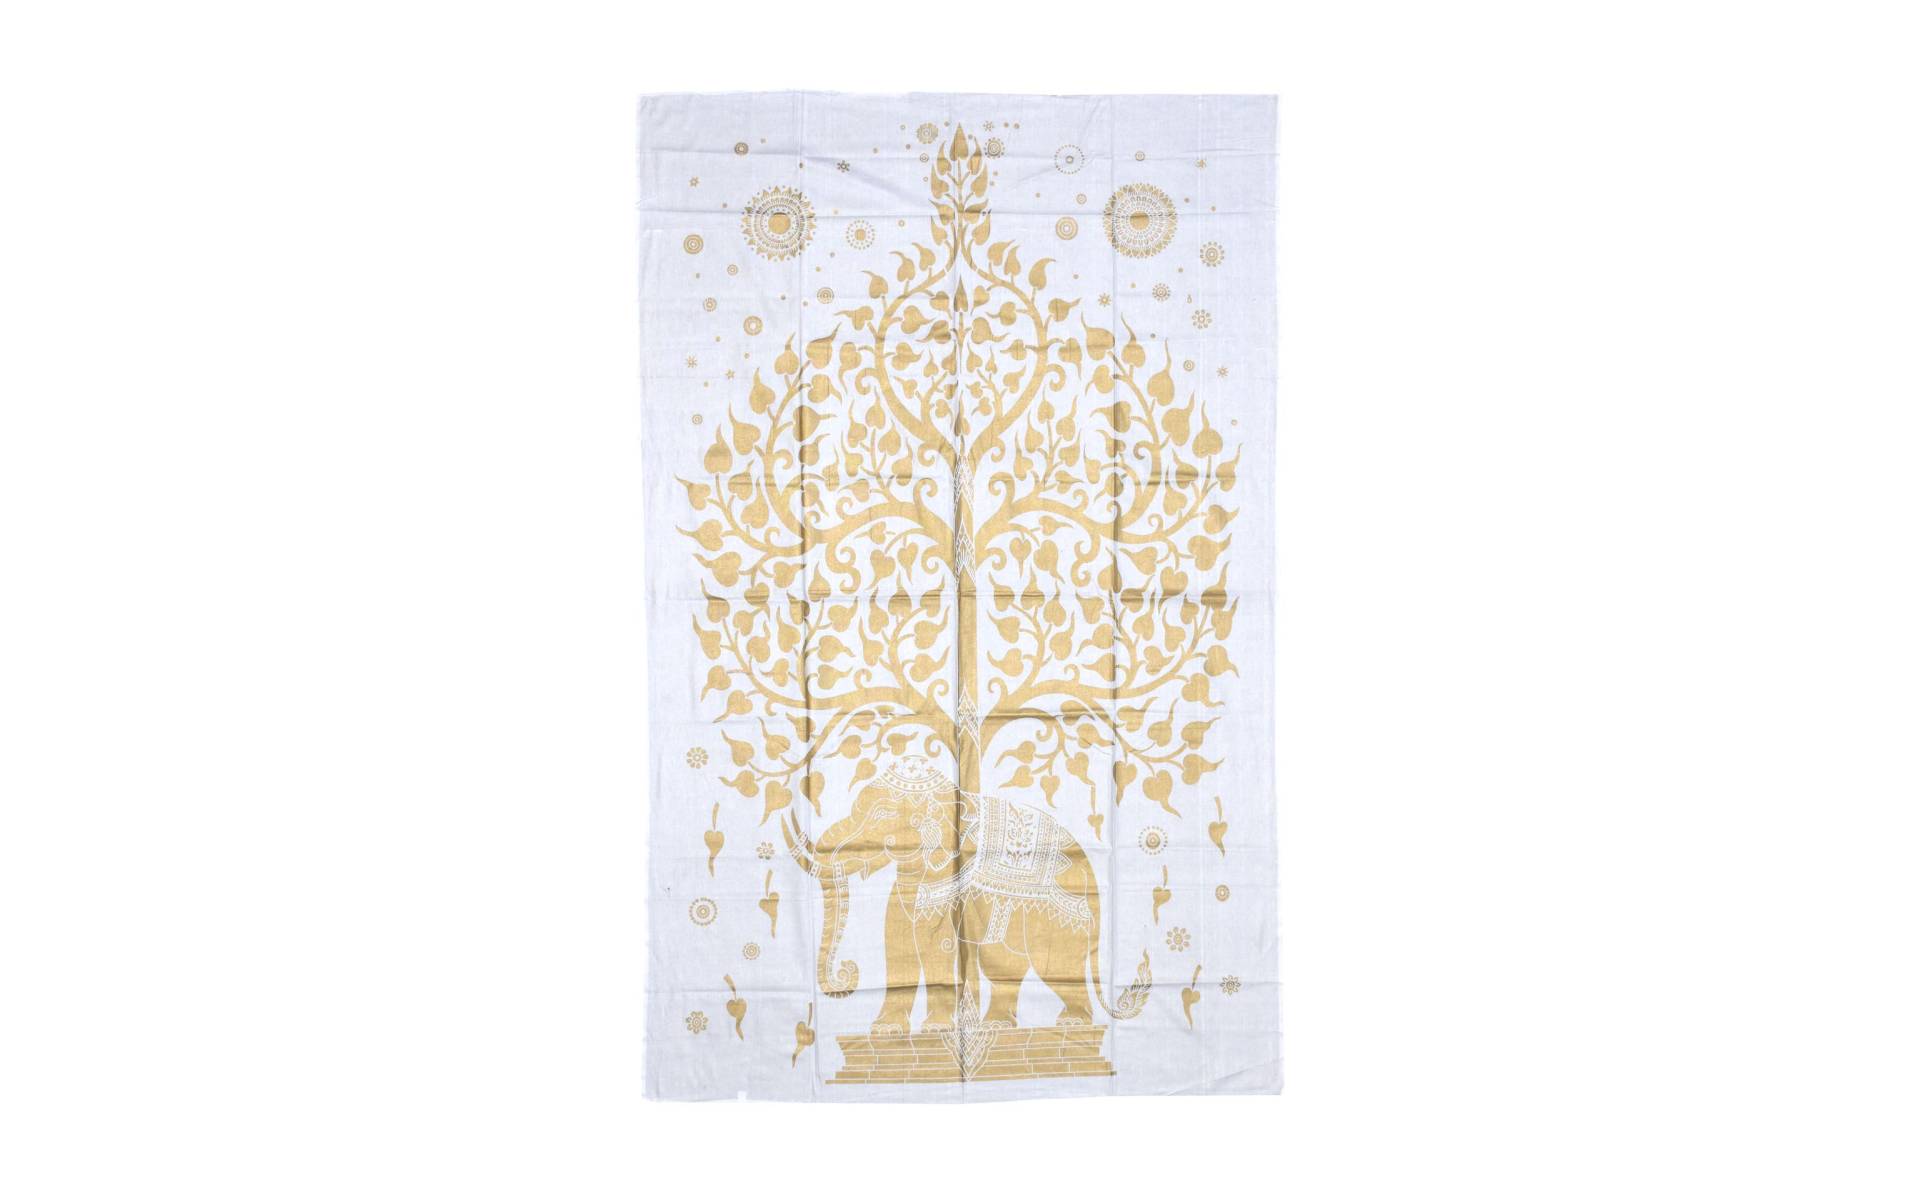 Prikrývka s tlačou, biela, zlatá tlač, strom života, 205x132cm